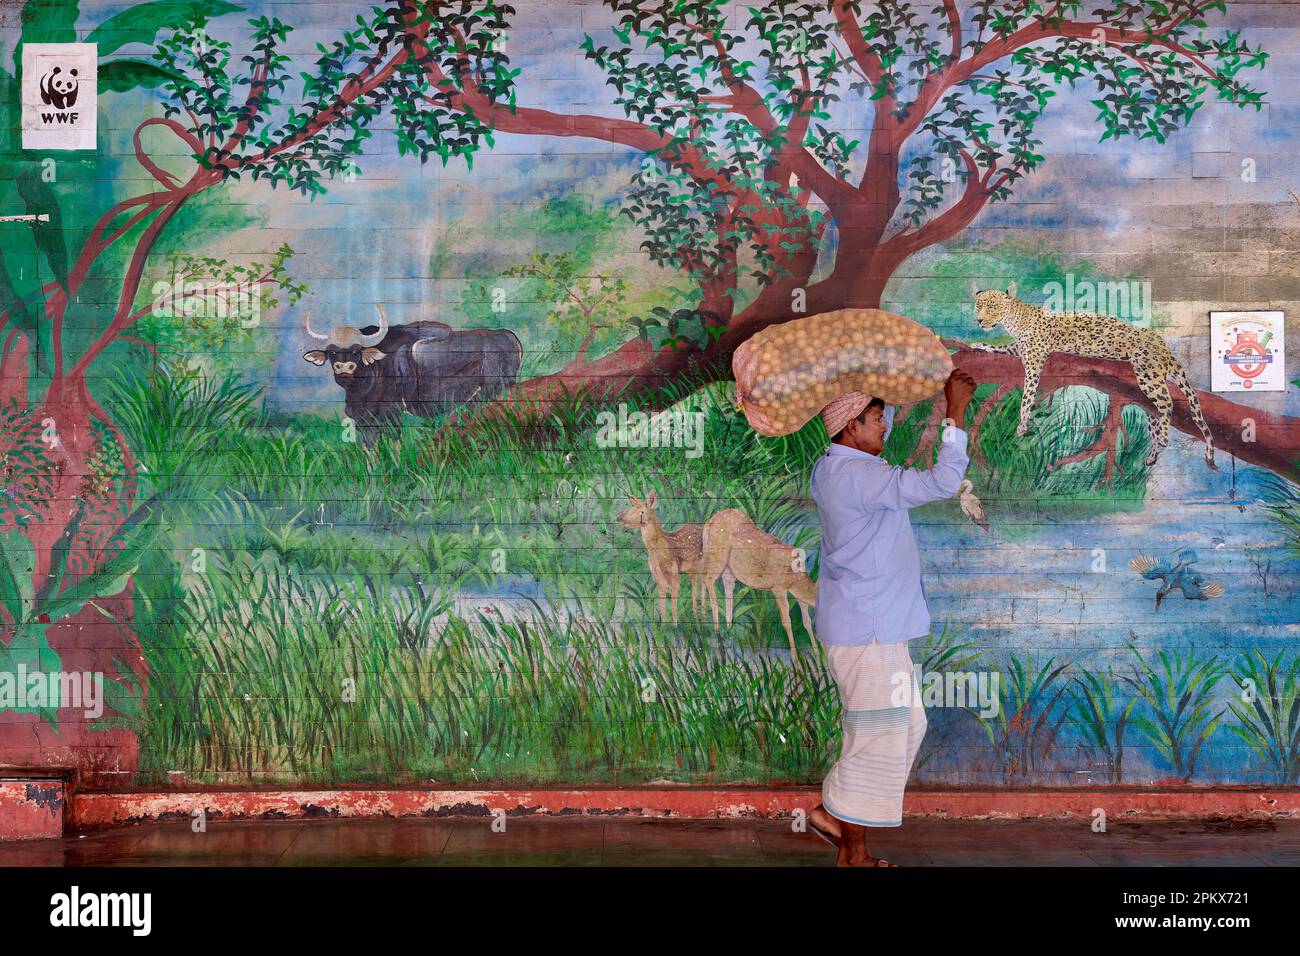 Un porteur avec un sac sur sa tête passe une fresque à la gare de Byculla à Mumbai, en Inde, son thème de la faune un hommage au zoo de Byculla voisin Banque D'Images